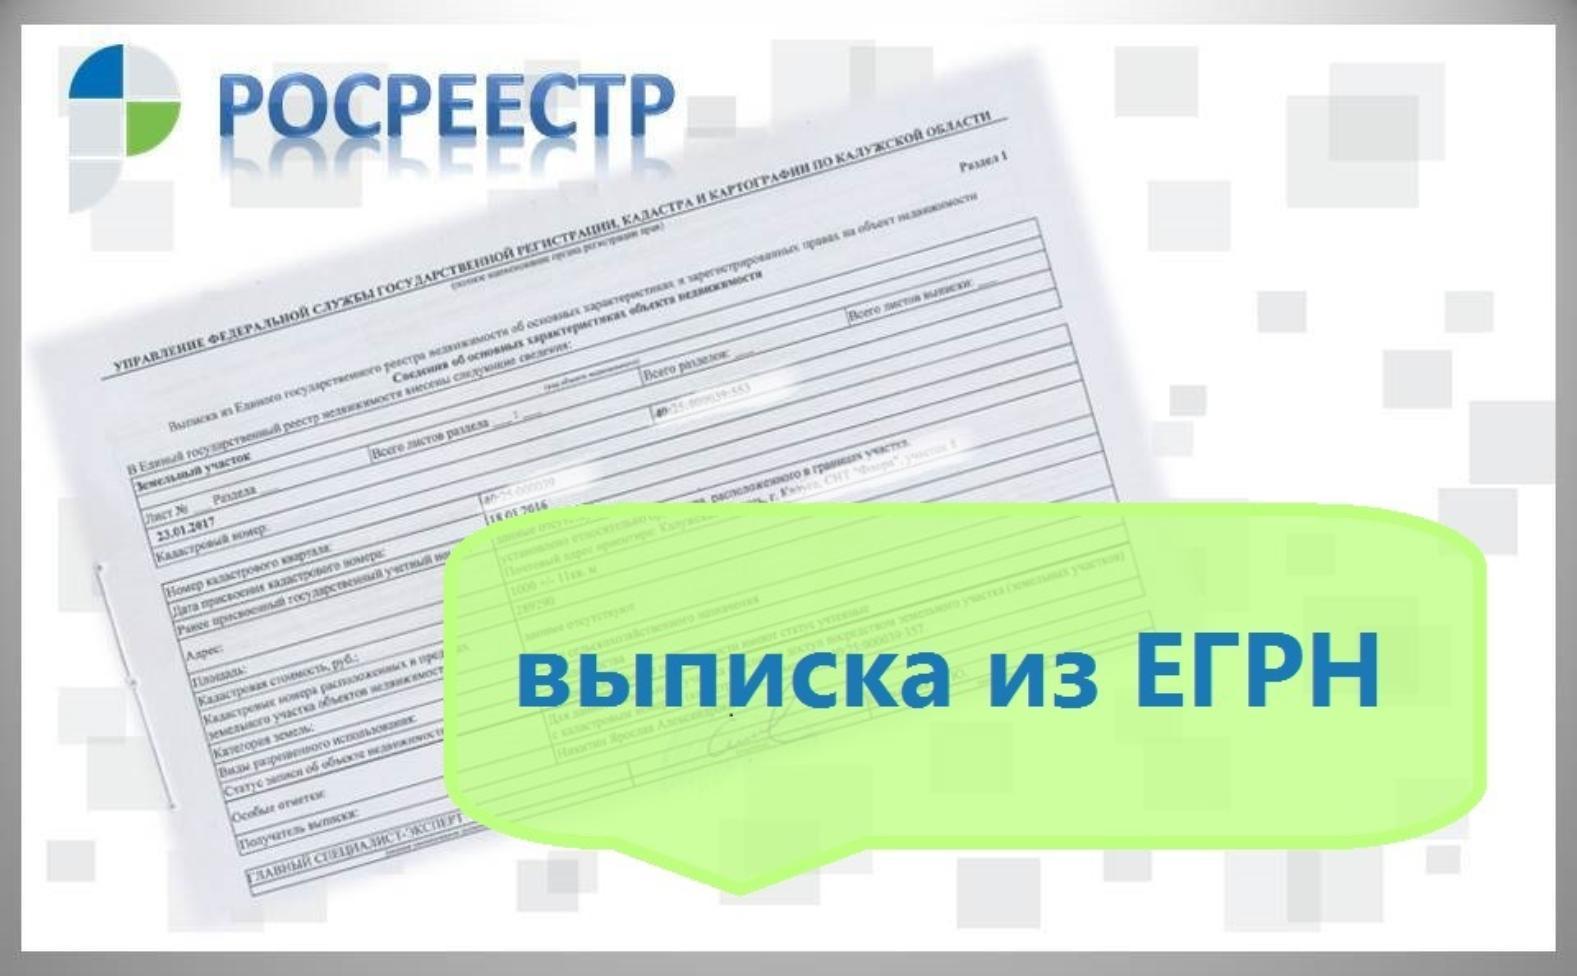 Жители Белгородского района могут проверять выписки из ЕГРН на достоверность.